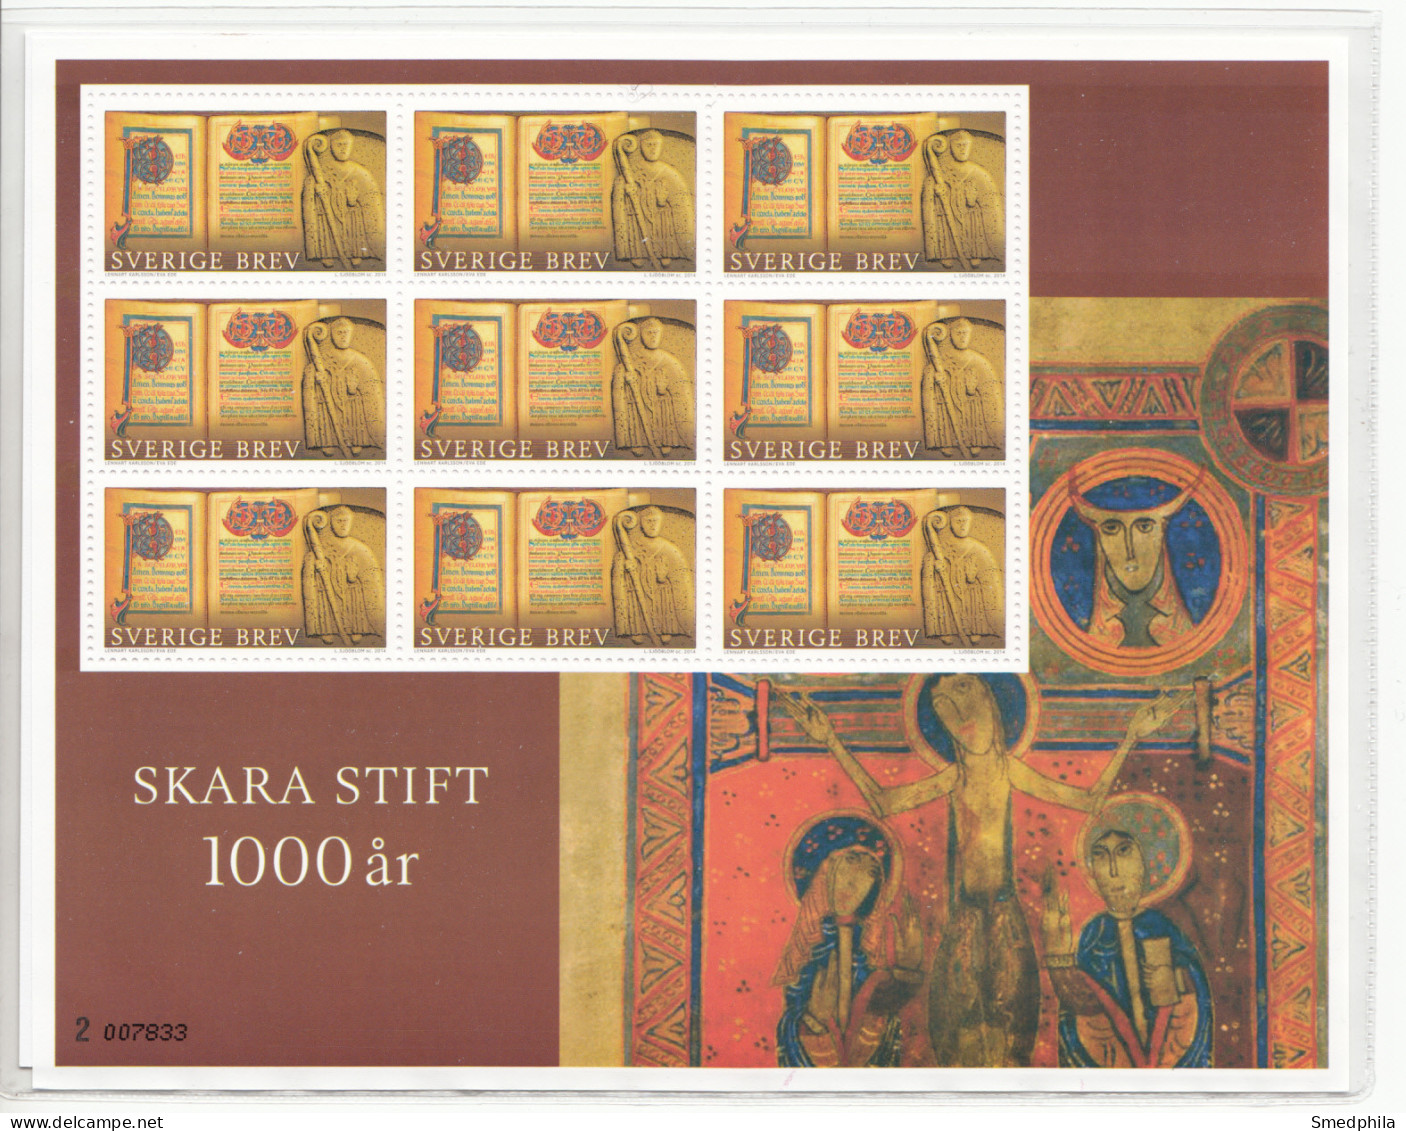 Sweden Souvenir Sheet 2014 - Church Art MNH ** - Blocs-feuillets